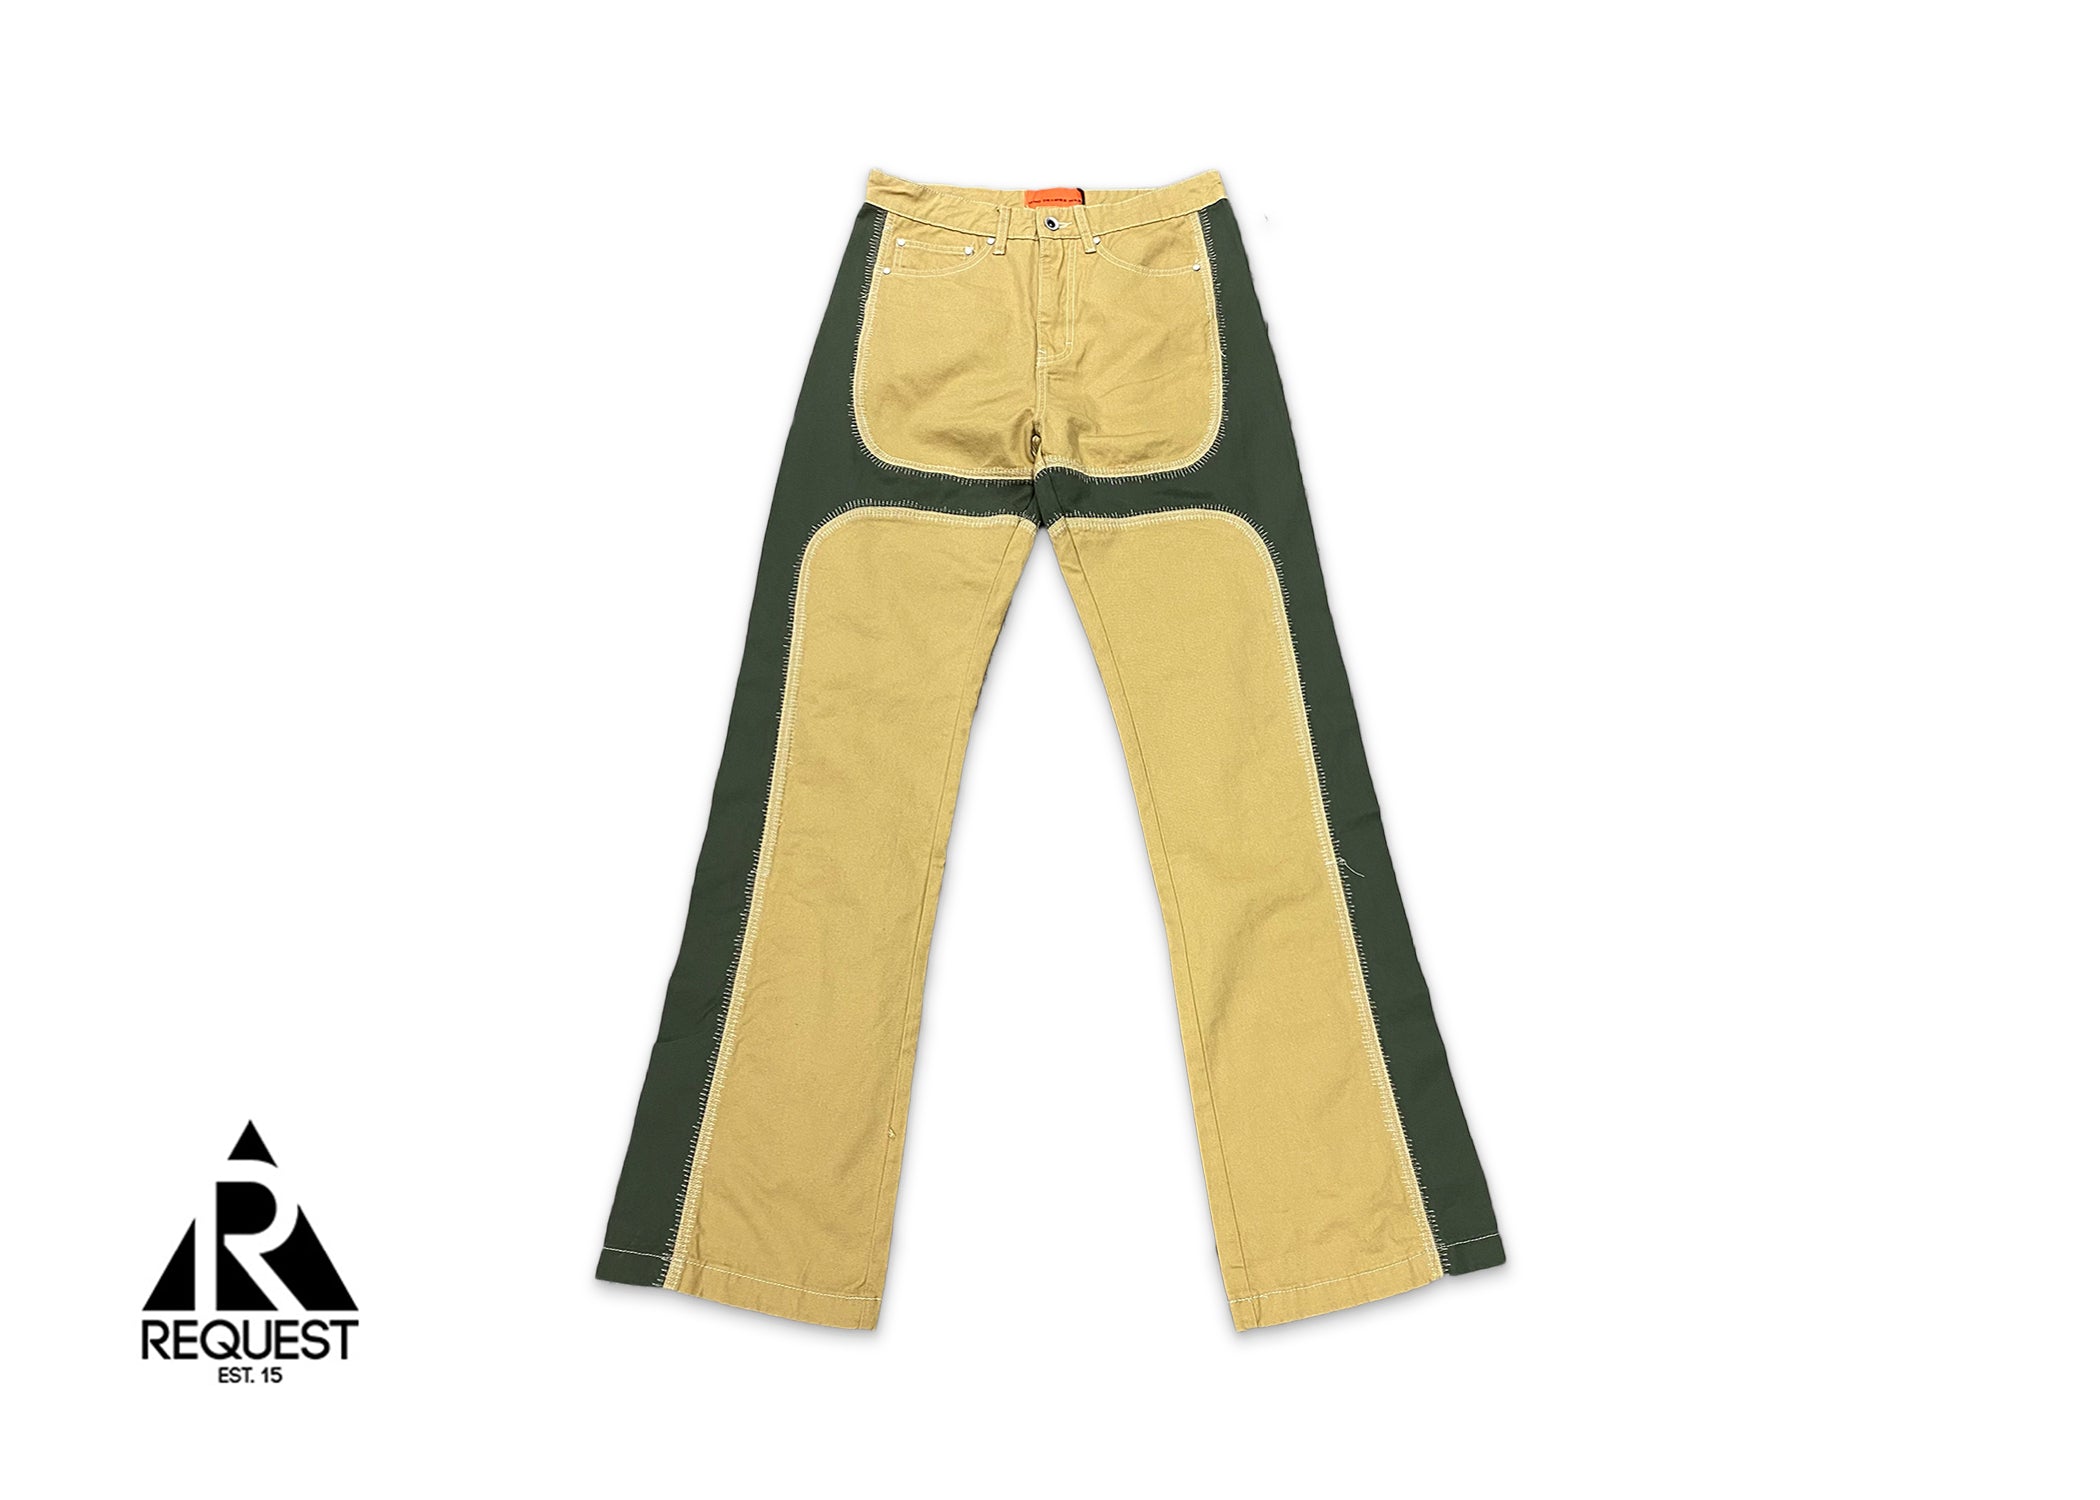 MRDR BRAVADO Who Decides War Trouser Pants "Khaki/Green"